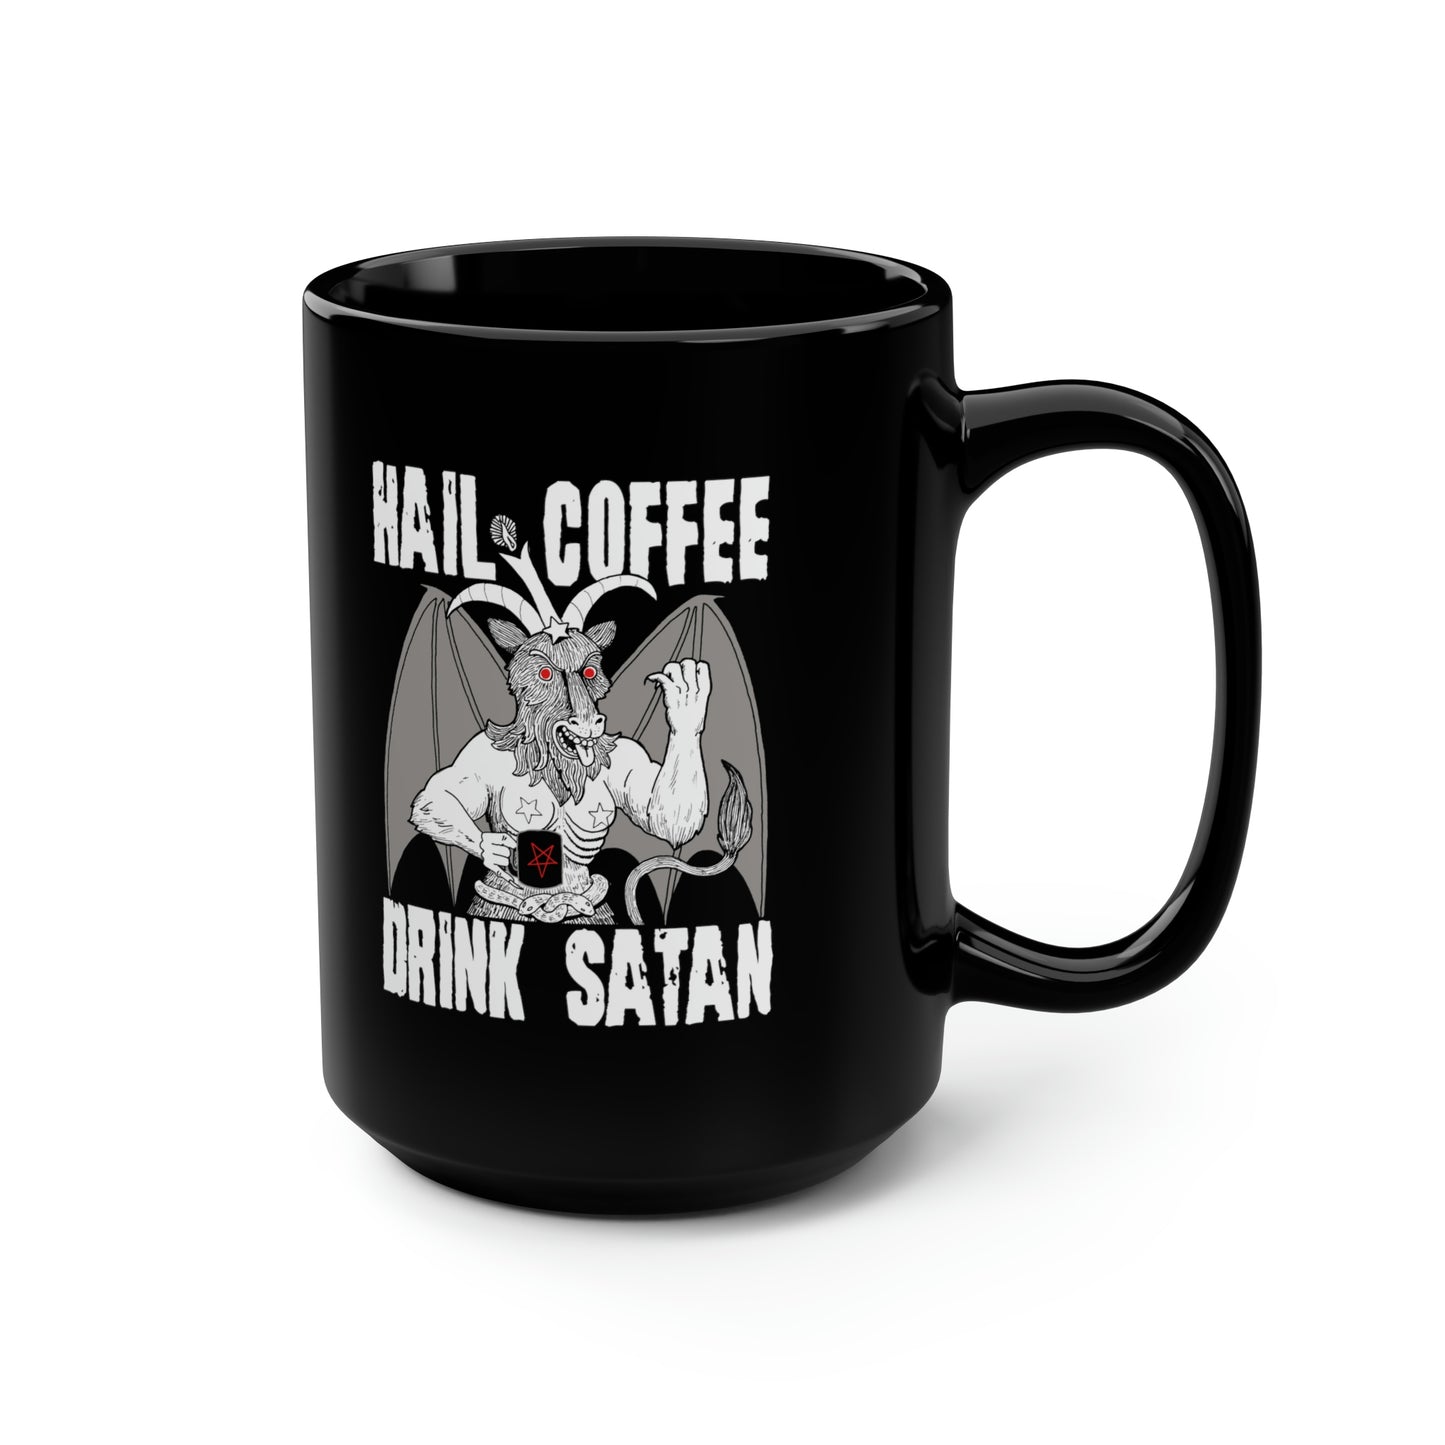 Hail Coffee Drink Satan Black Mug - 15oz